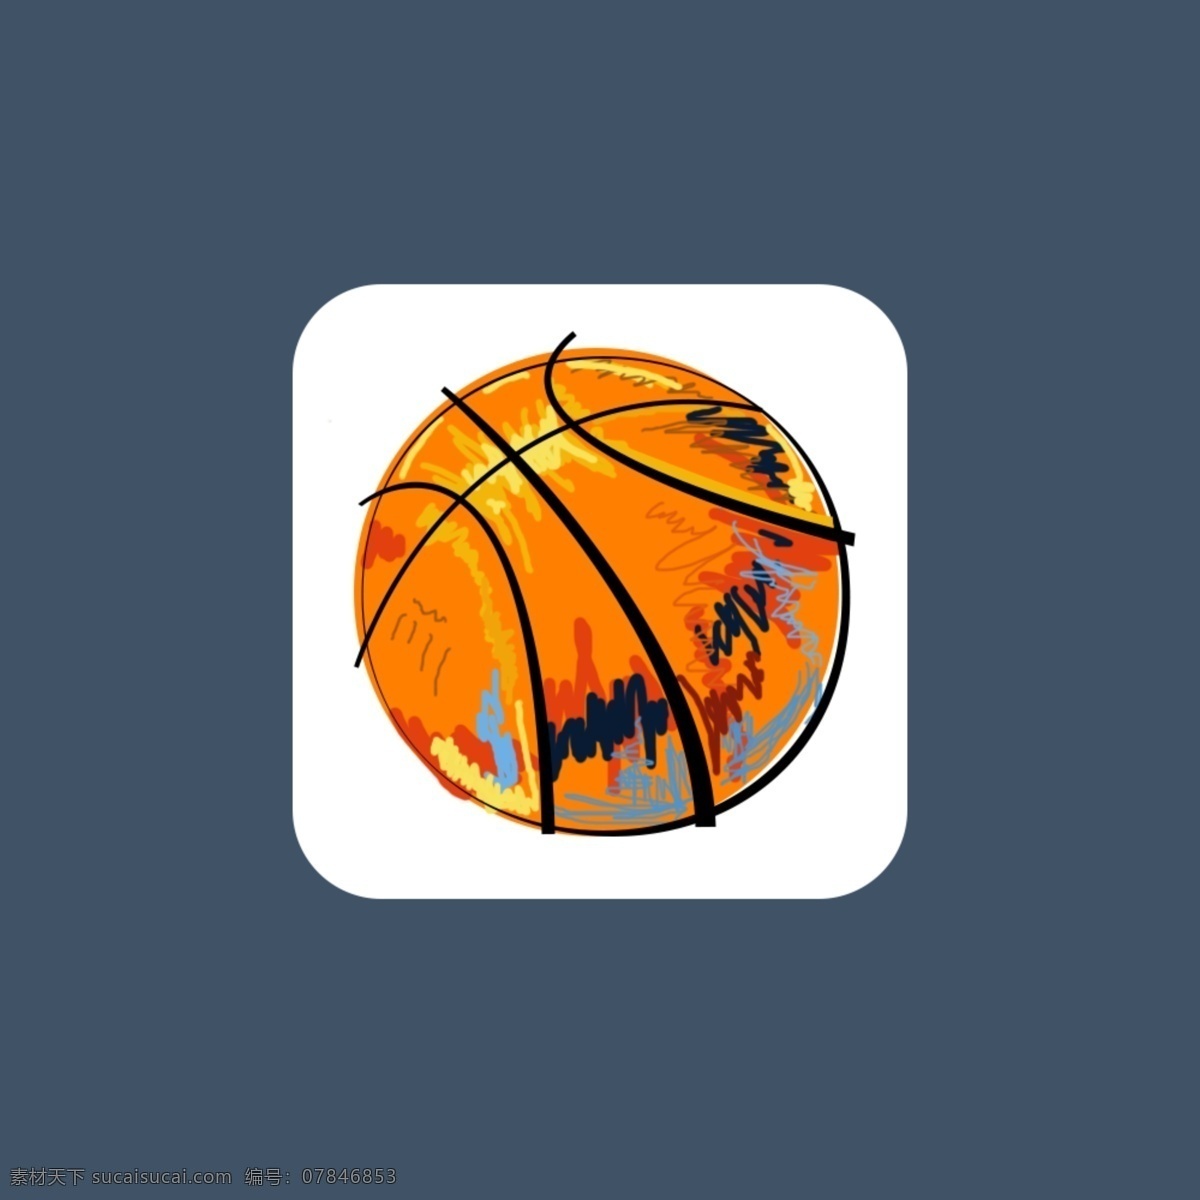 大灌篮 篮球 app图标 图标 手绘图标 运动 灌篮 界面 web 界面设计 图标按钮